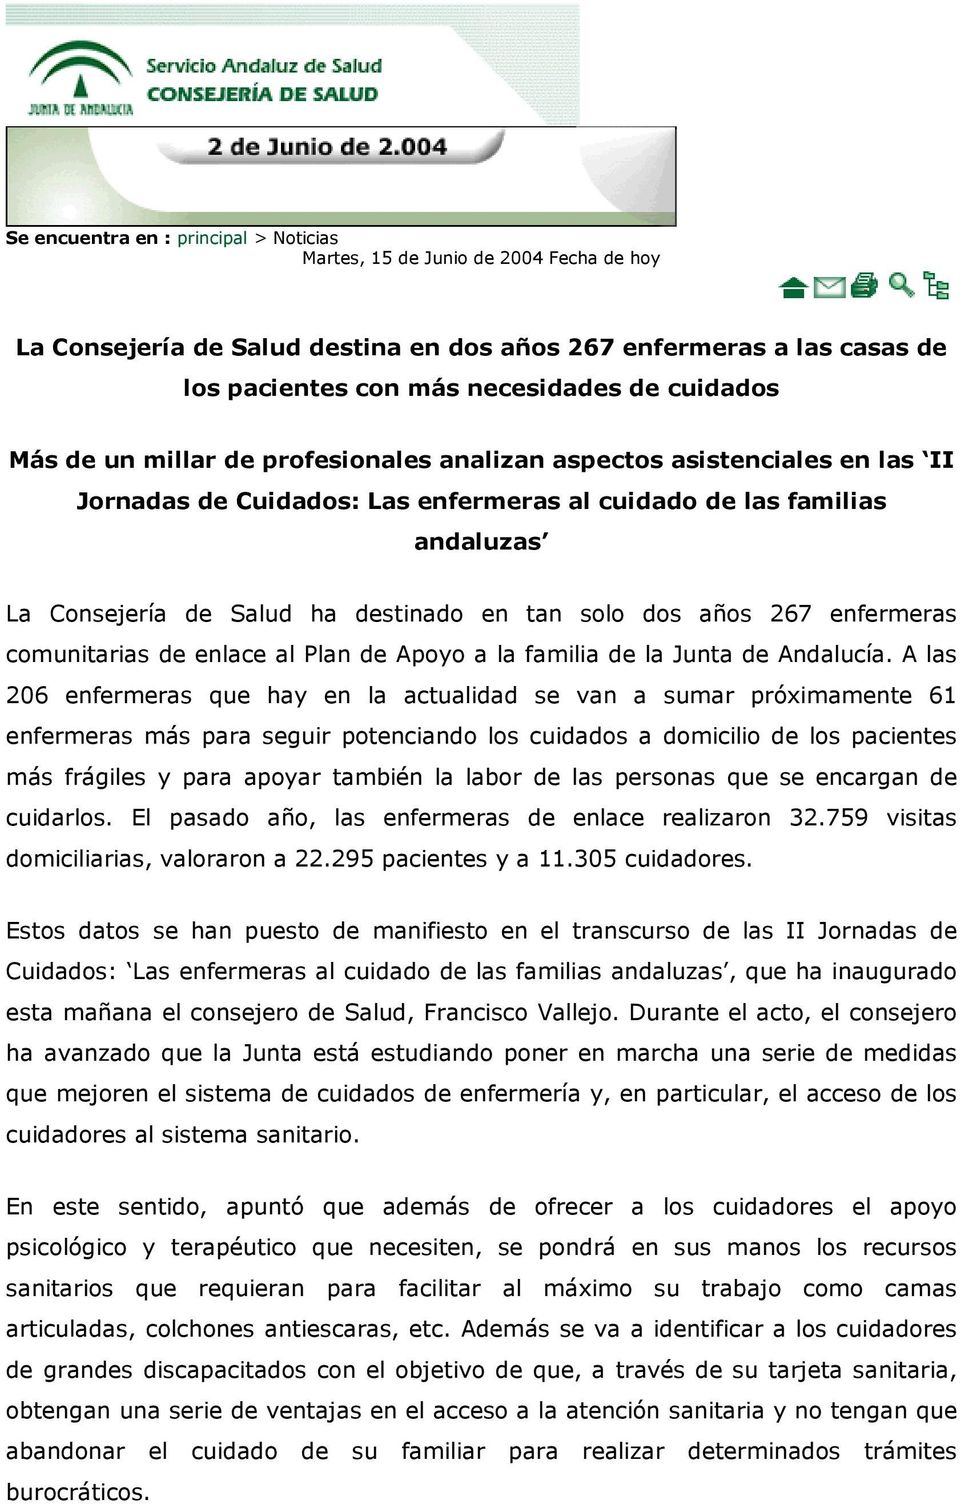 dos años 267 enfermeras comunitarias de enlace al Plan de Apoyo a la familia de la Junta de Andalucía.